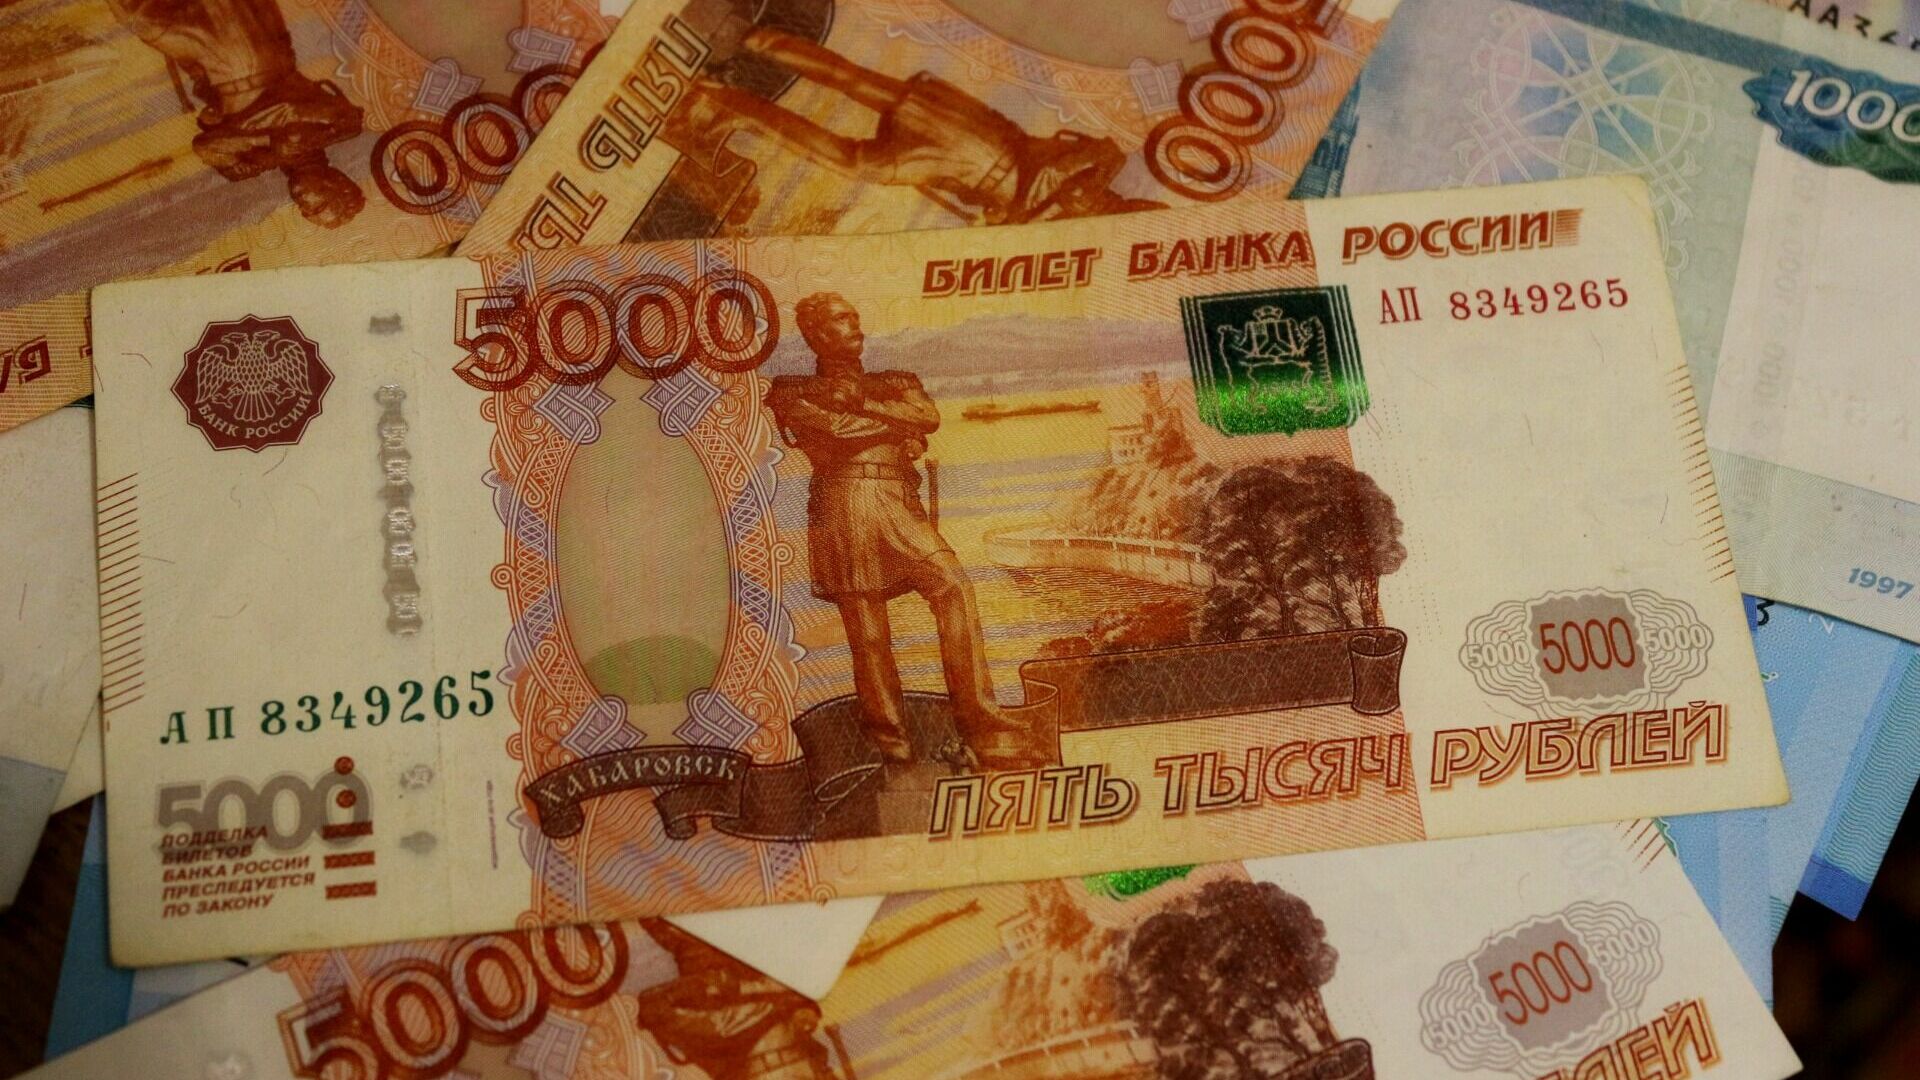 Суд отказал властям в ХМАО во взыскании миллионов рублей с экс-директора МУП